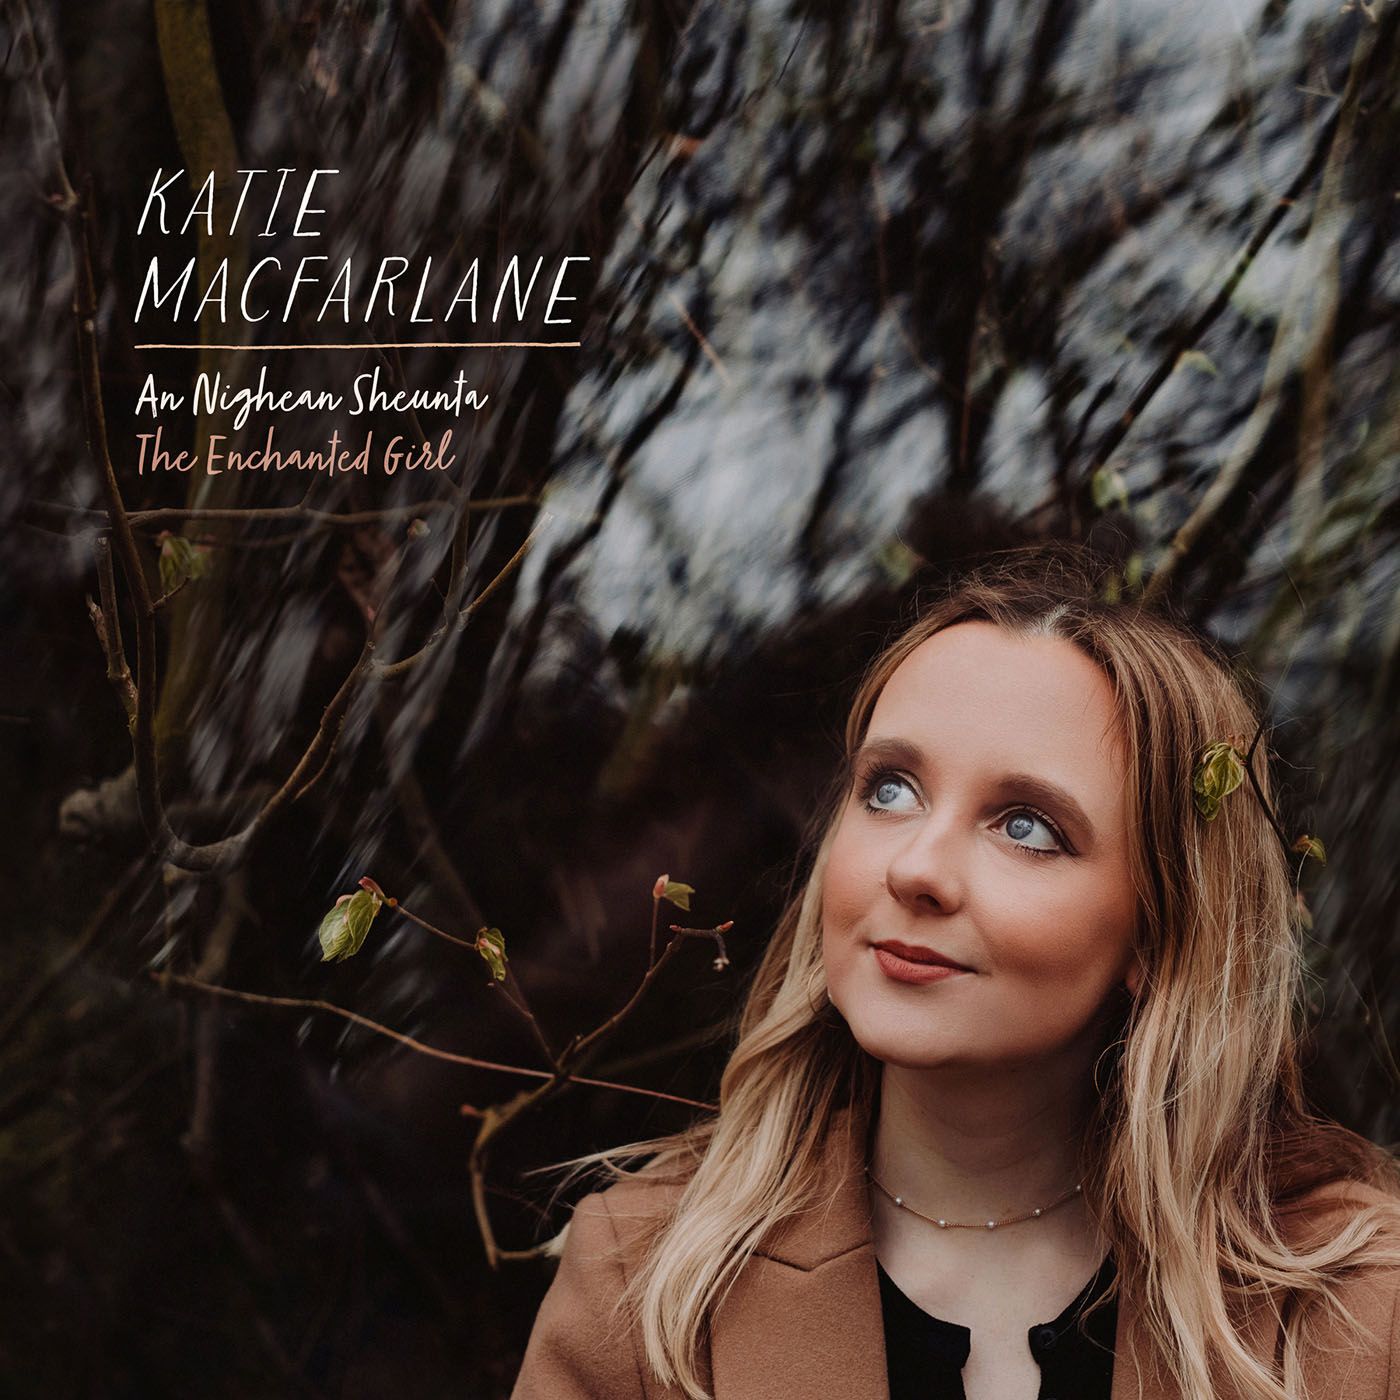 Katie MacFarlane